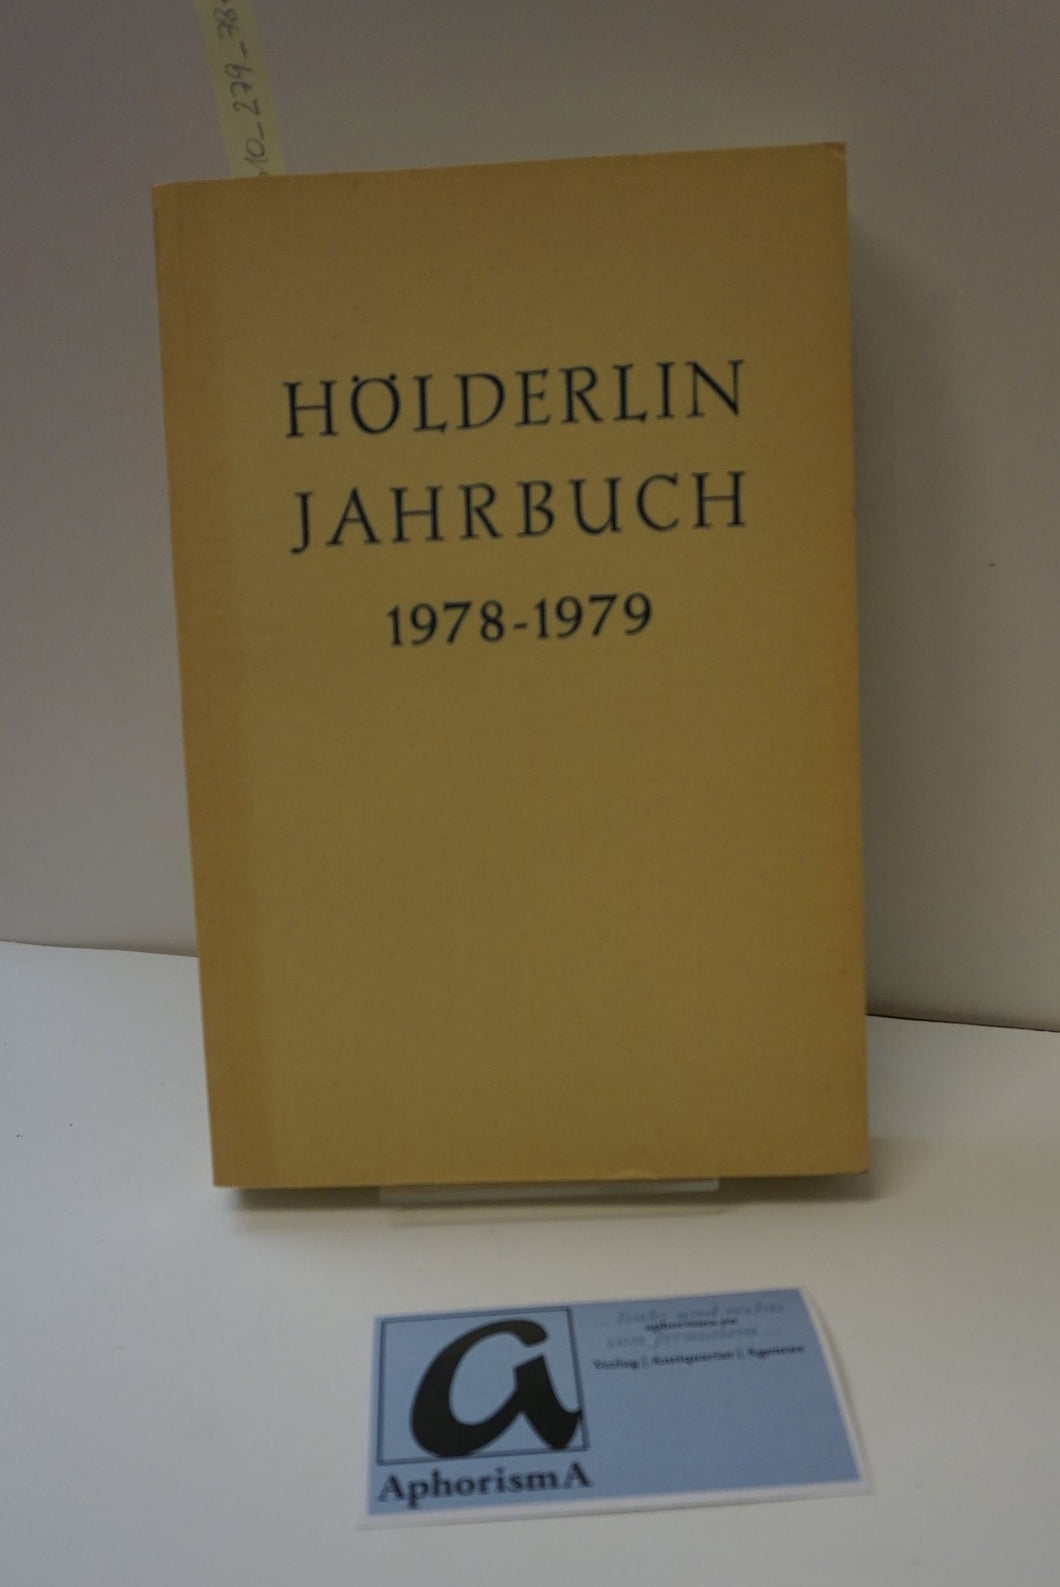 Hölderlin Jahrbuch 1978-1979